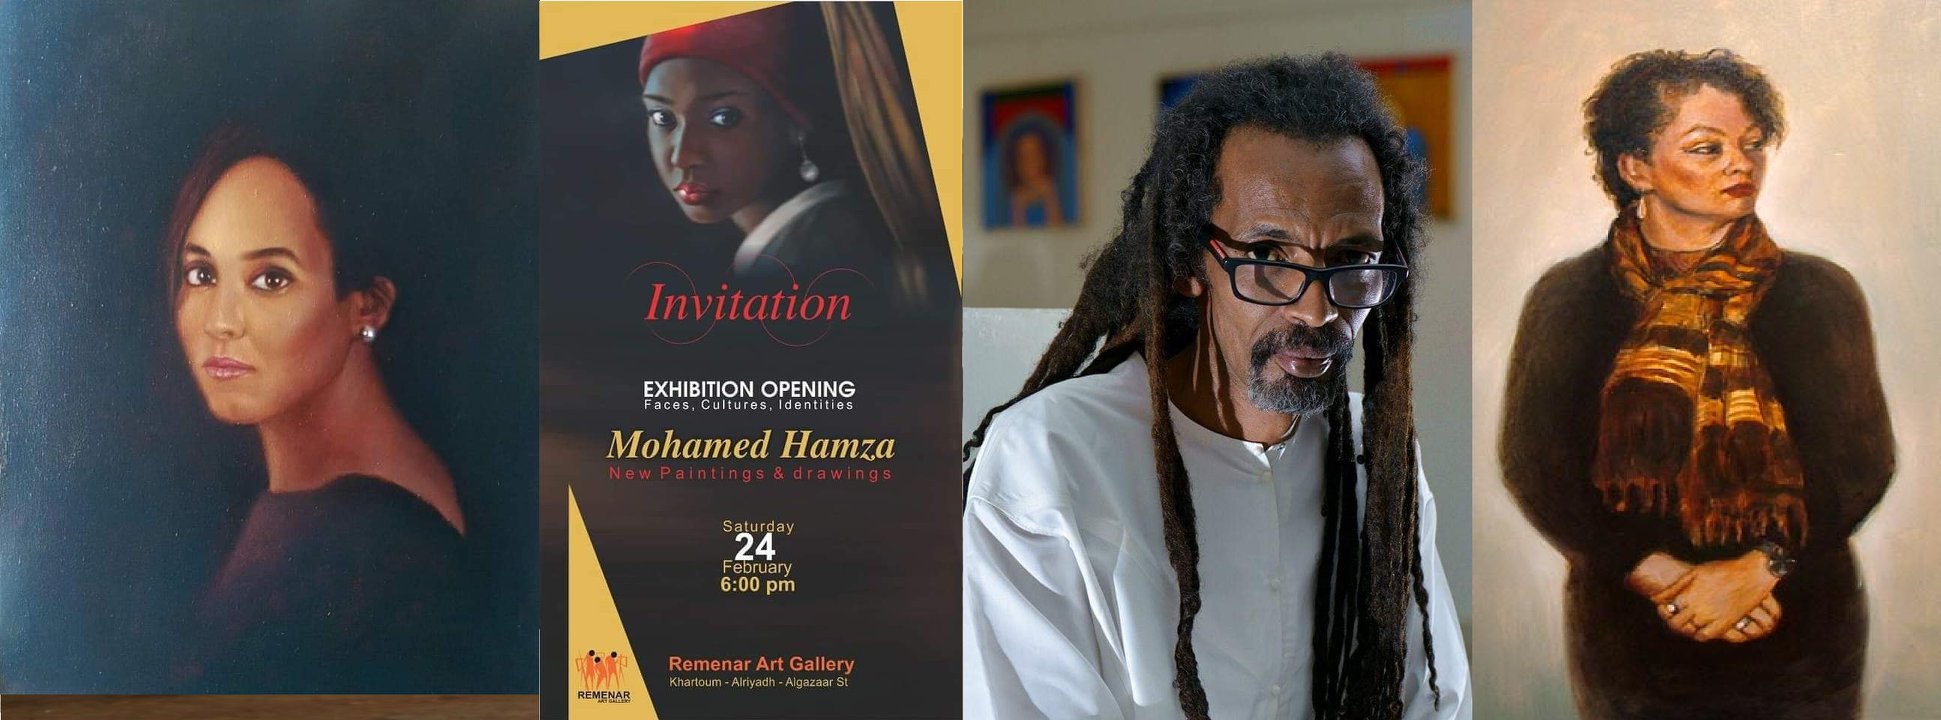 دعوة لمعرض لمحمد حمزة في لندن في العام 2018